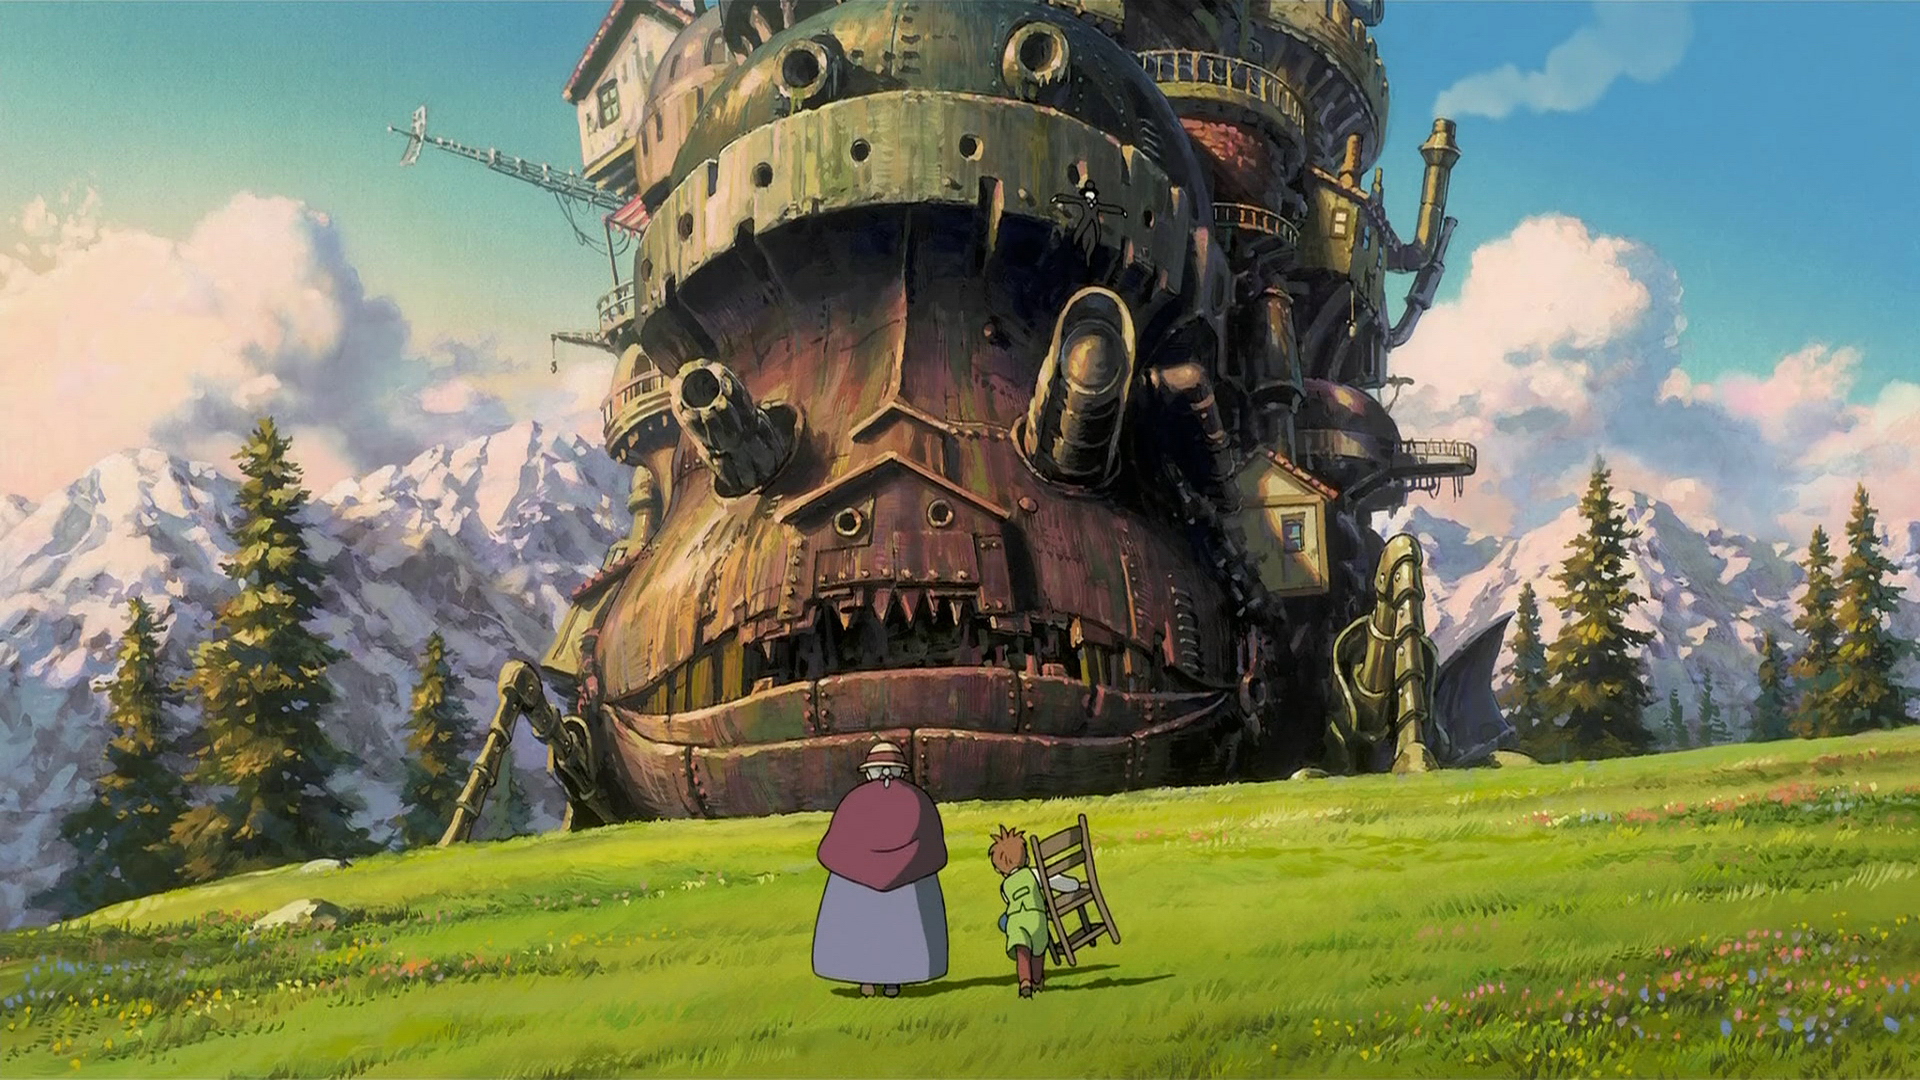 Ciclo de Cine Ghibli: El castillo ambulante – Duoc UC